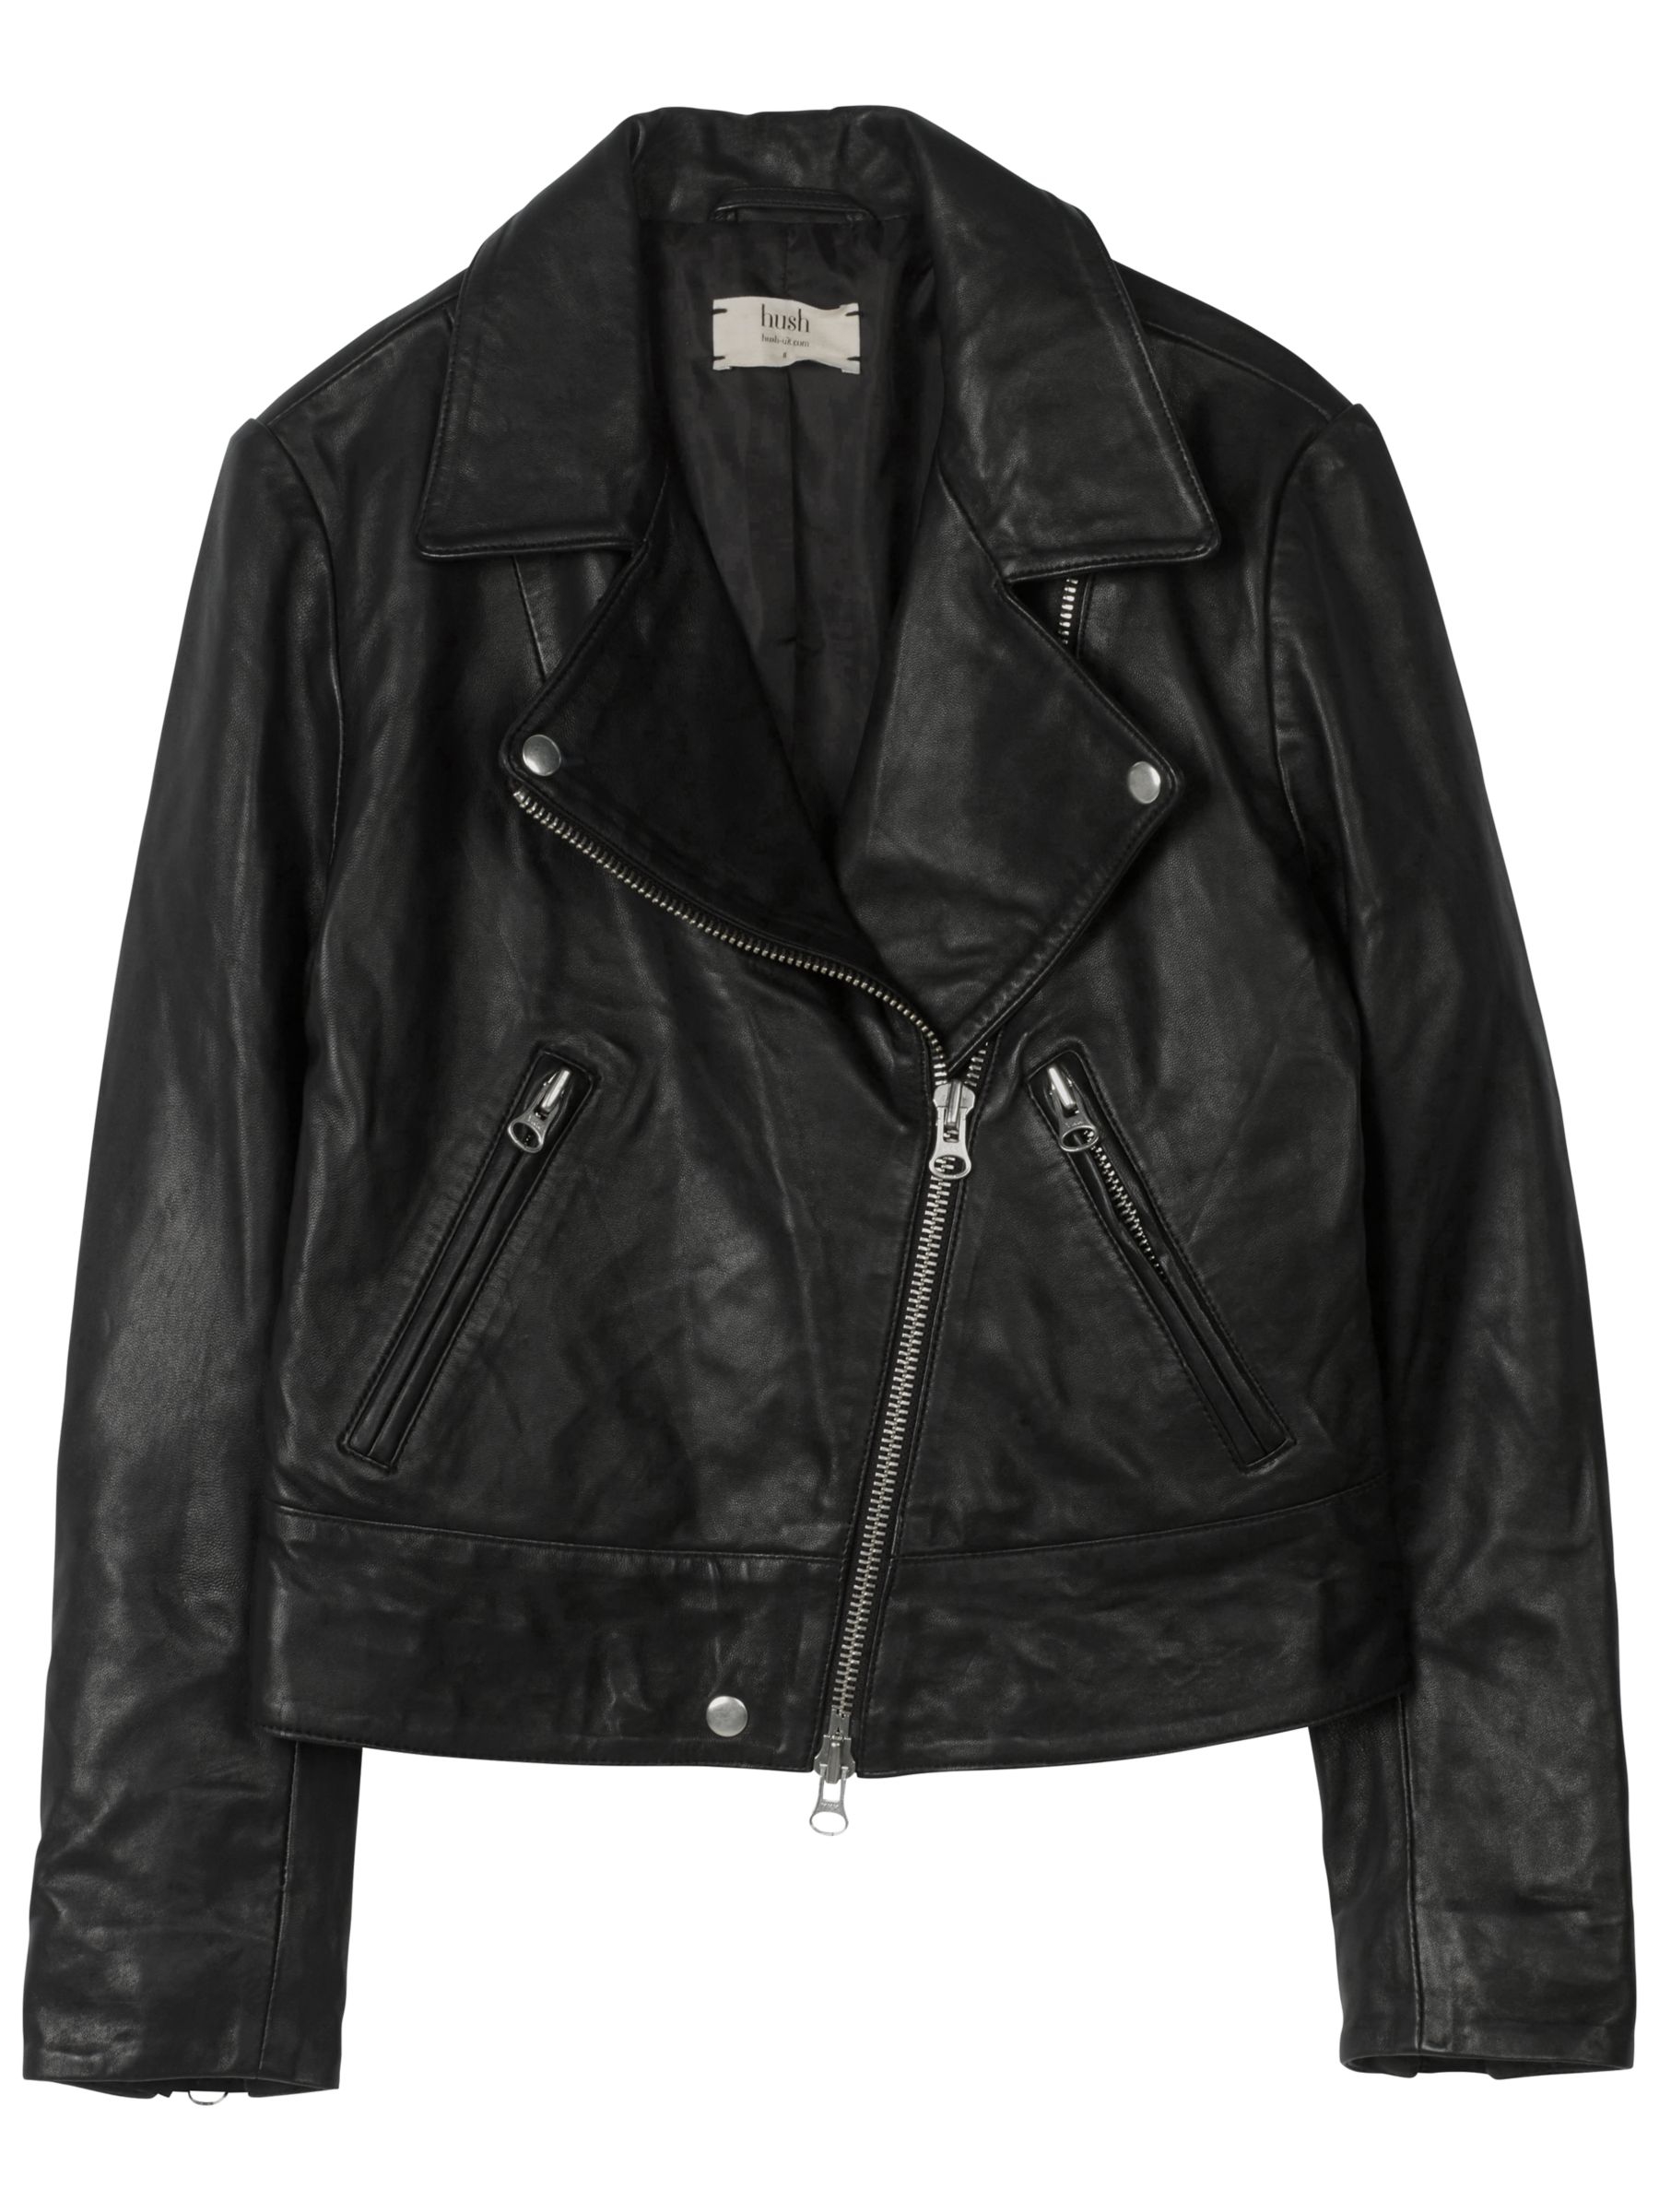 hush Onyx Leather Jacket, Black, 6